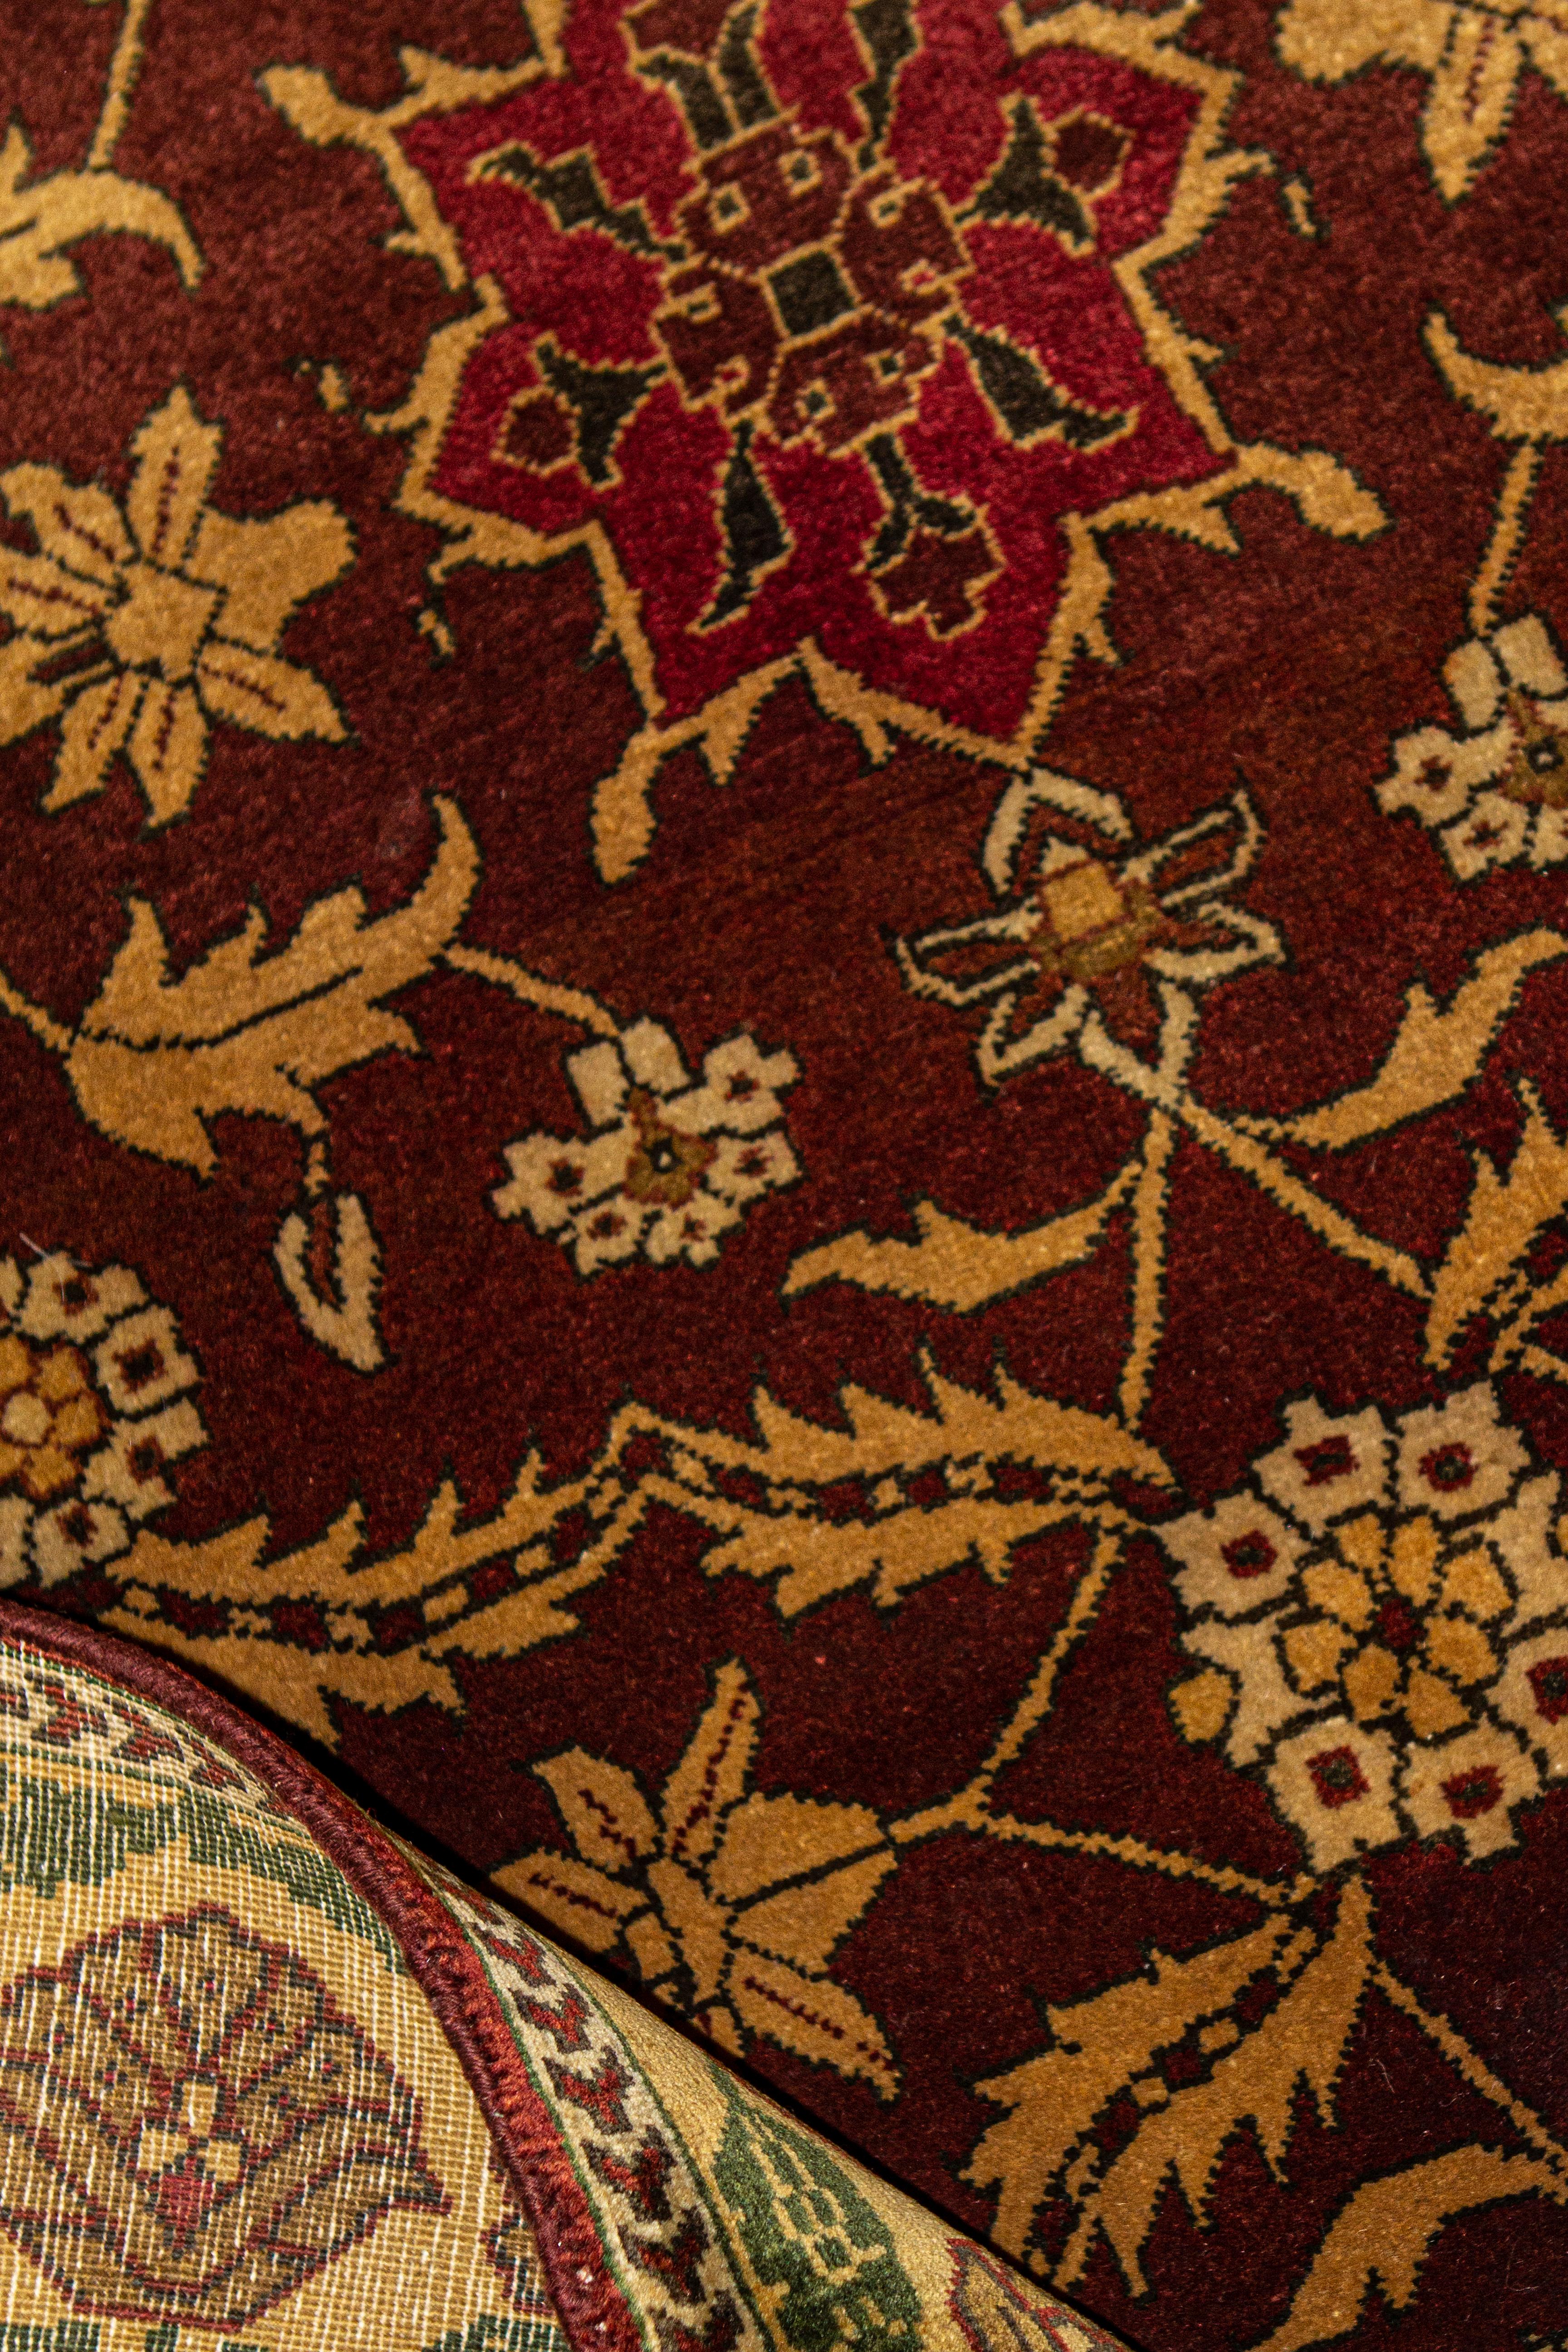 Antike Teppiche, die in Indien gewebt wurden, können auf eine lange Geschichte zurückblicken und gehören zu den faszinierendsten aller orientalischen Teppiche. Die Inspiration für diese Kollektion stammt von authentischen orientalischen Designs, die